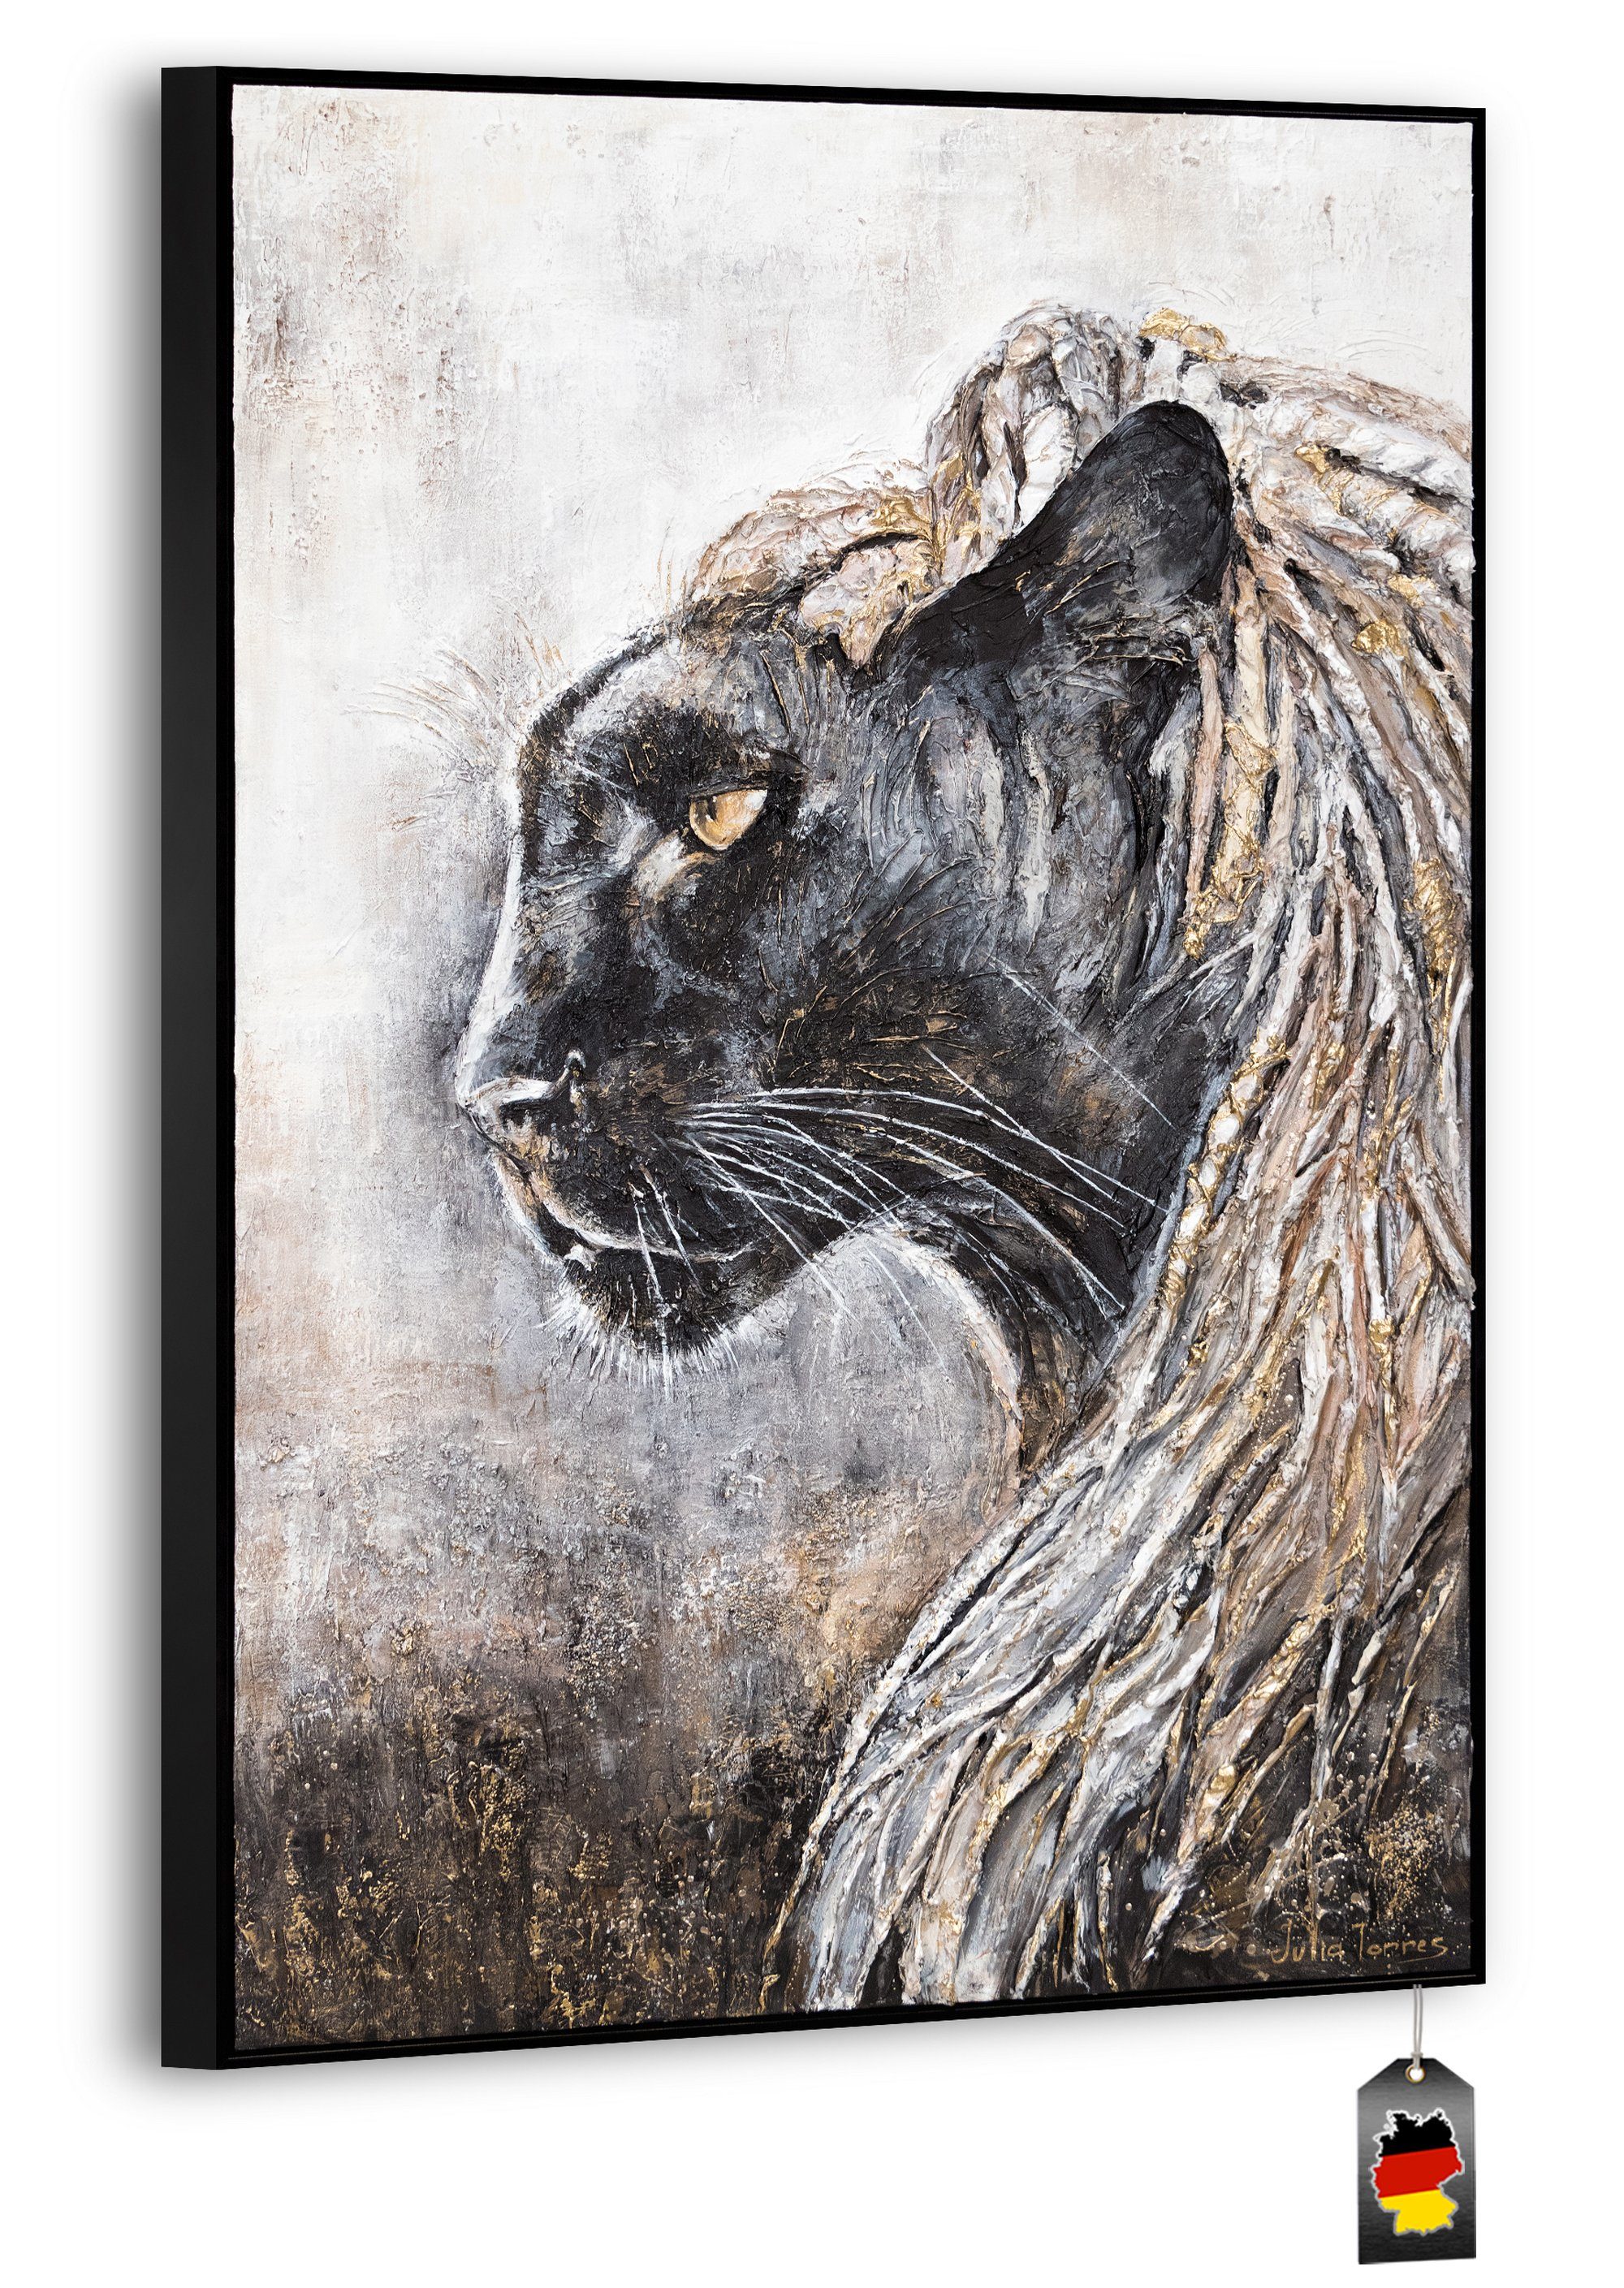 YS-Art Gemälde Baghira, Tiere, Leinwand Bild Handgemalt schwarzer Panther mit Rahmen